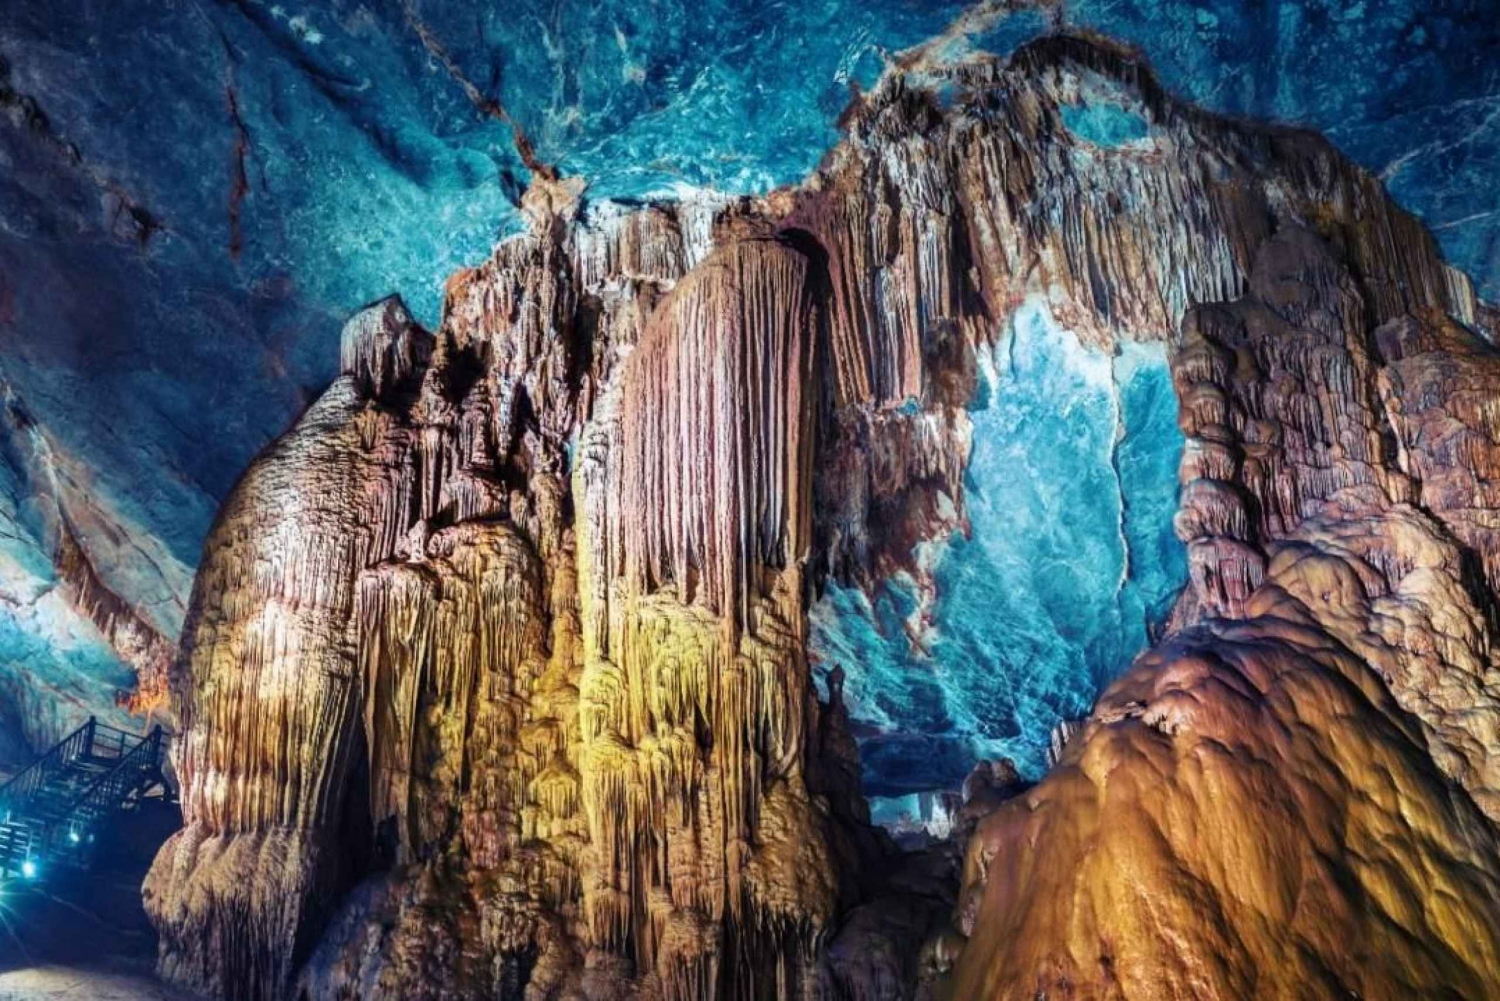 Fra Hue: Utforsk Phong Nha-grotten med guide/ Kun på oddetallsdager